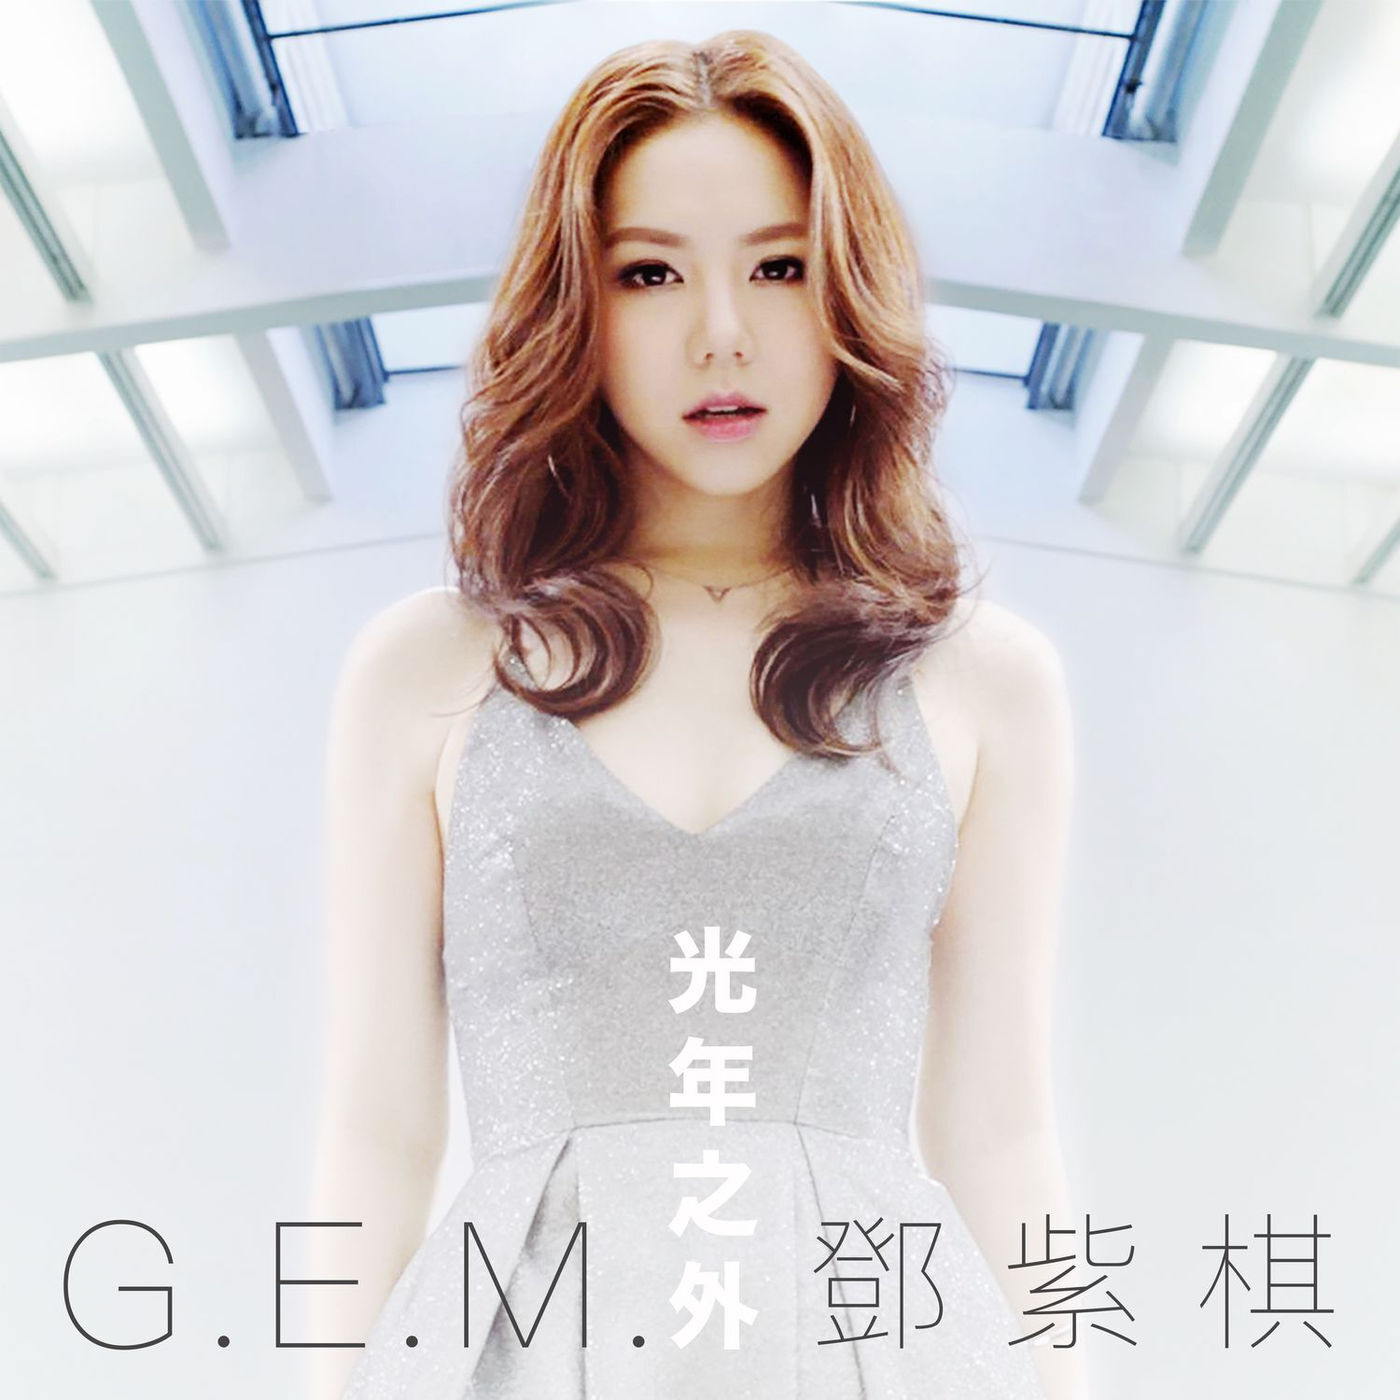 G.E.M.邓紫棋官宣新专辑 首创14集音乐连续剧MV模式